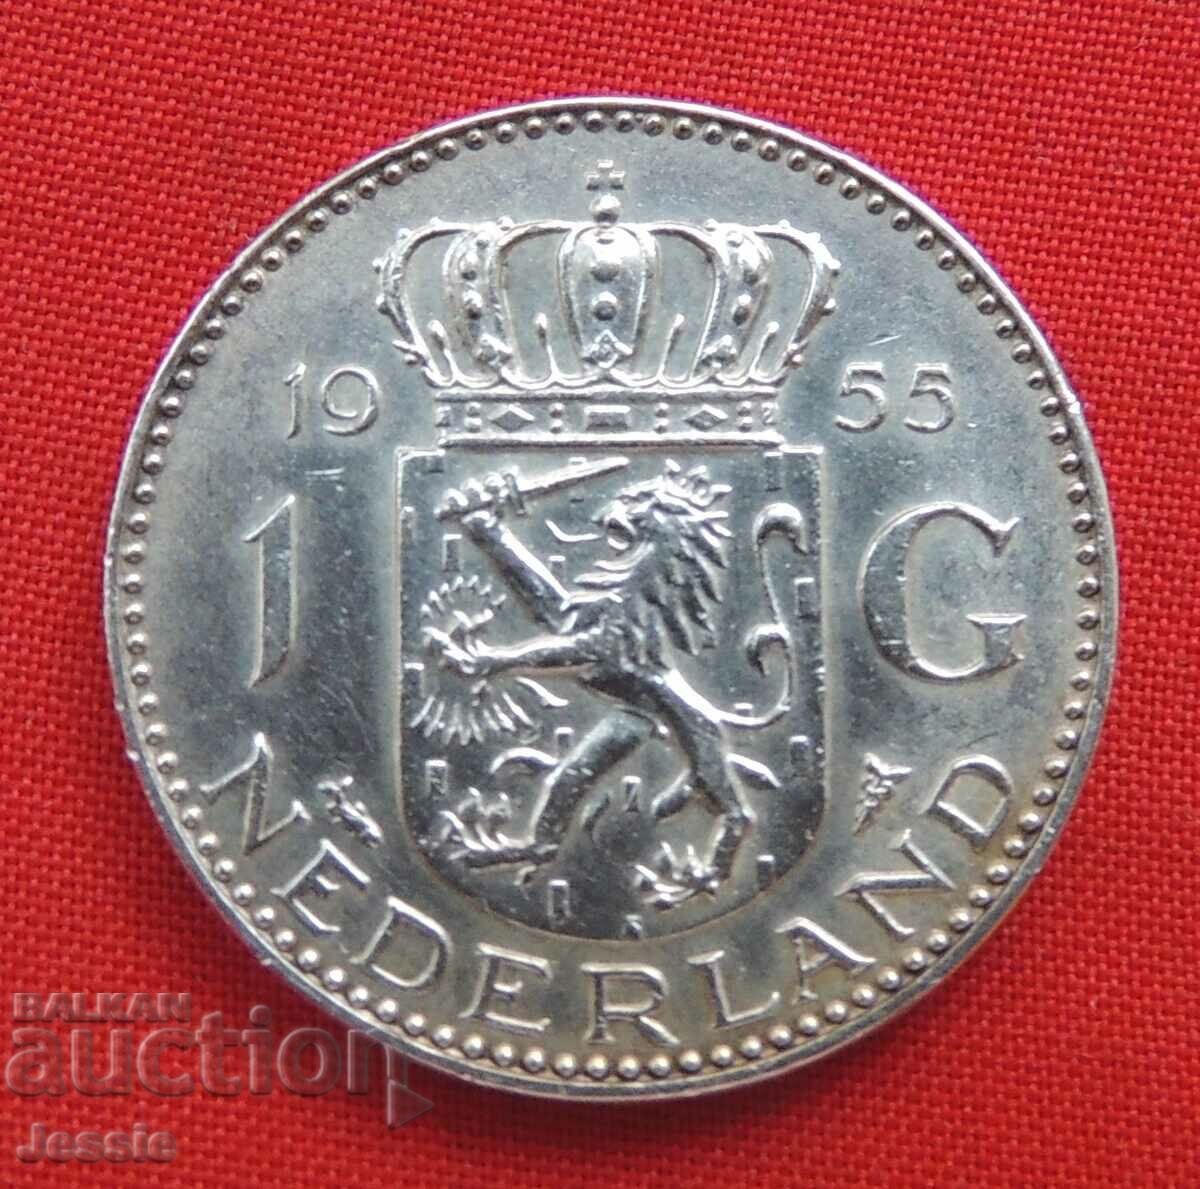 1 φιορίνι 1955 Ασήμι Ολλανδίας